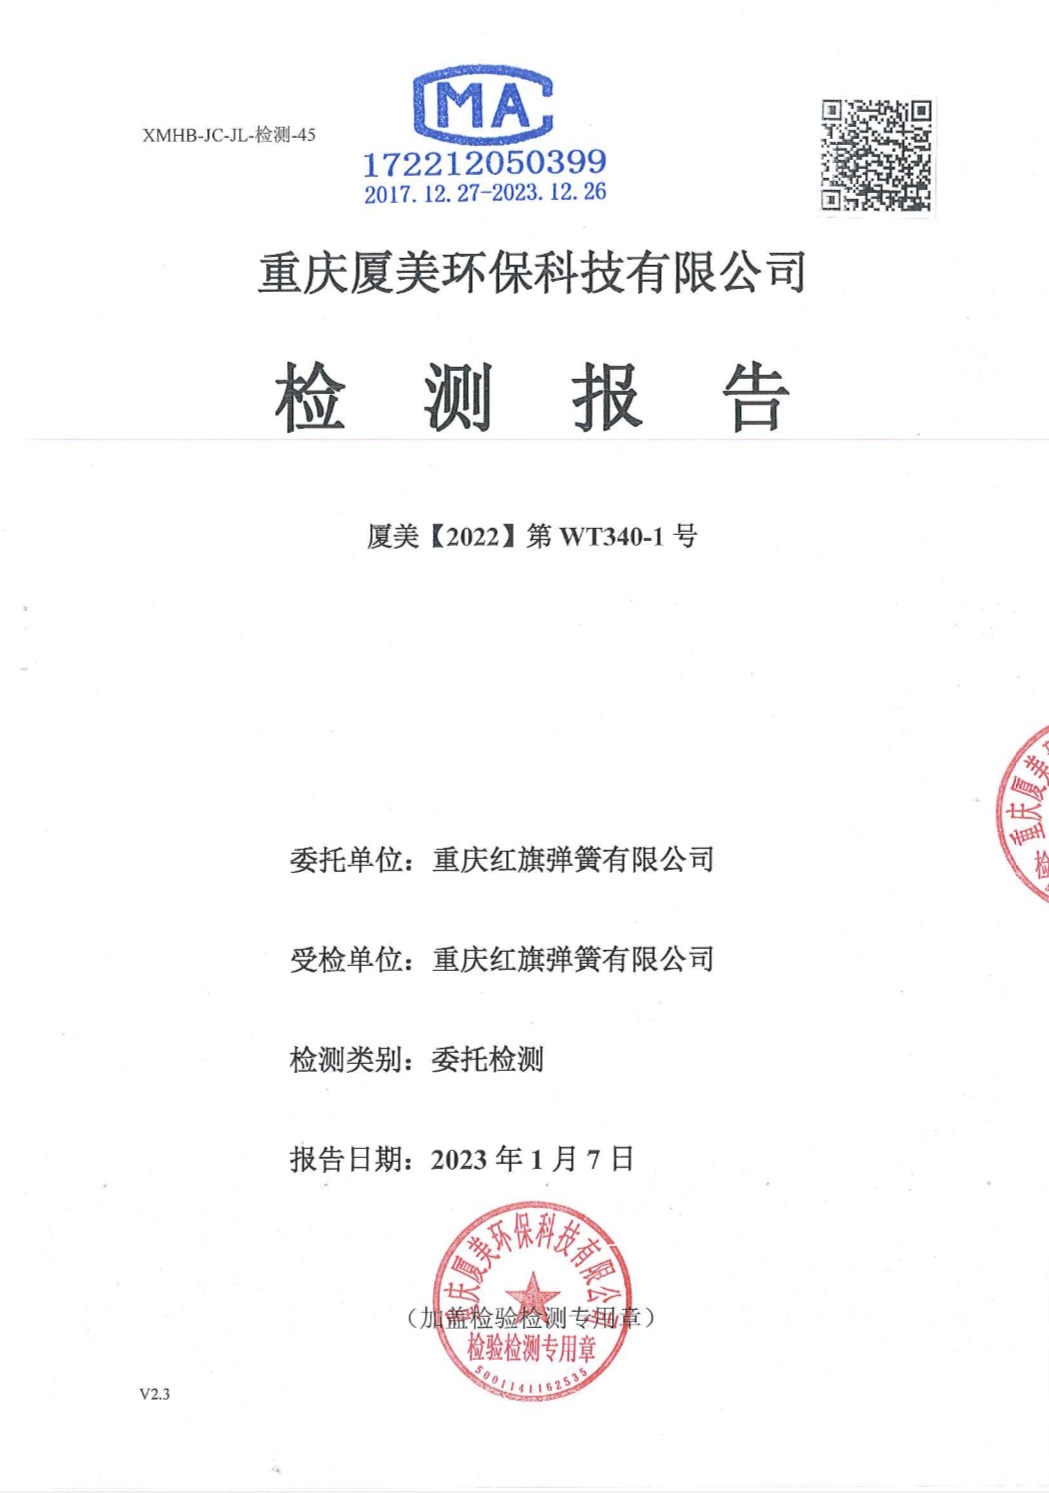 重慶紅旗彈簧有限公司2022年企業自行監測報告